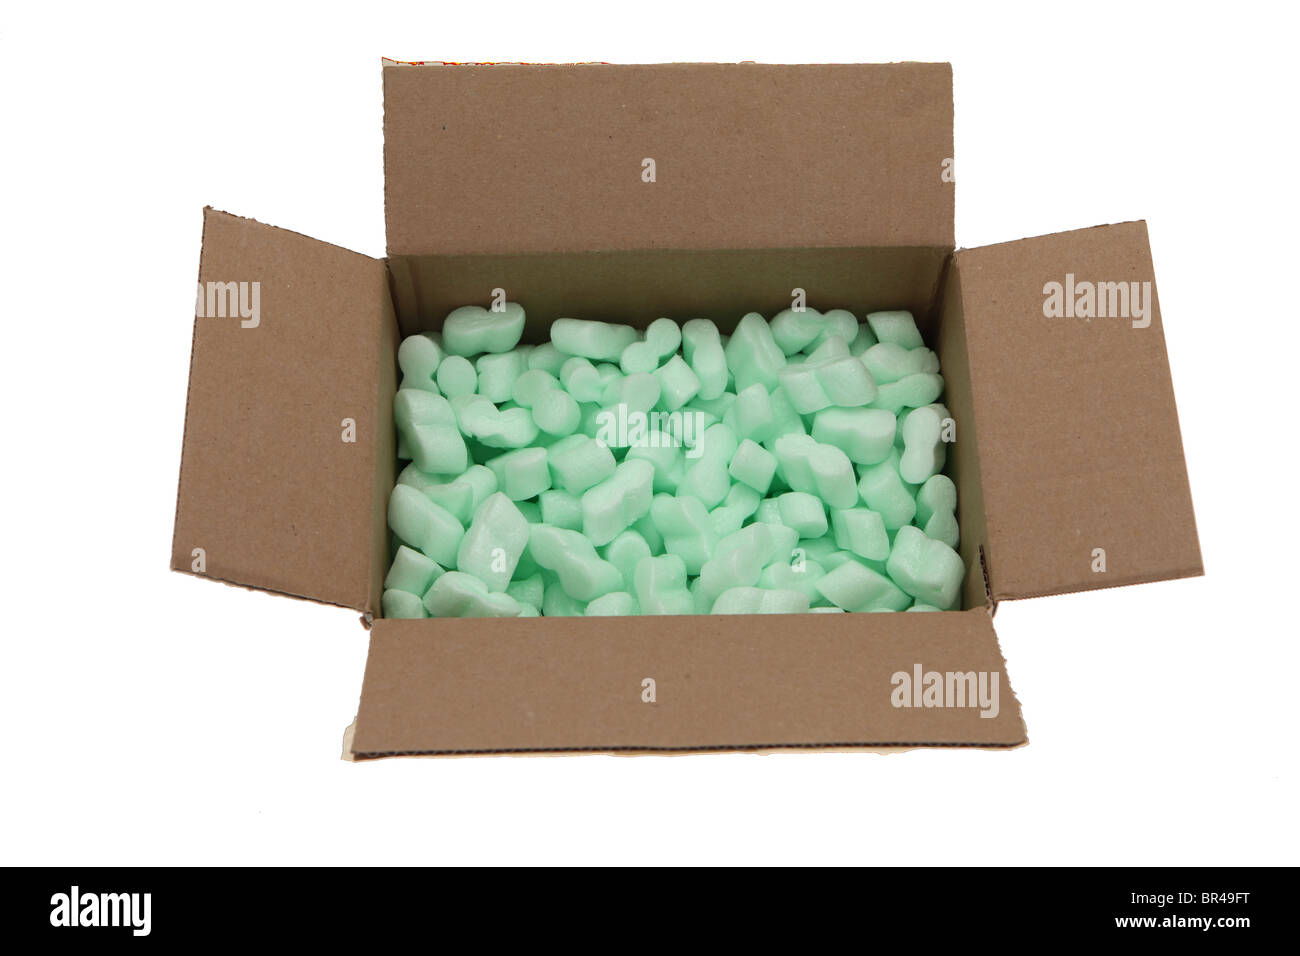 Boîte en carton brun vert avec des emballages en polystyrène arachides Banque D'Images